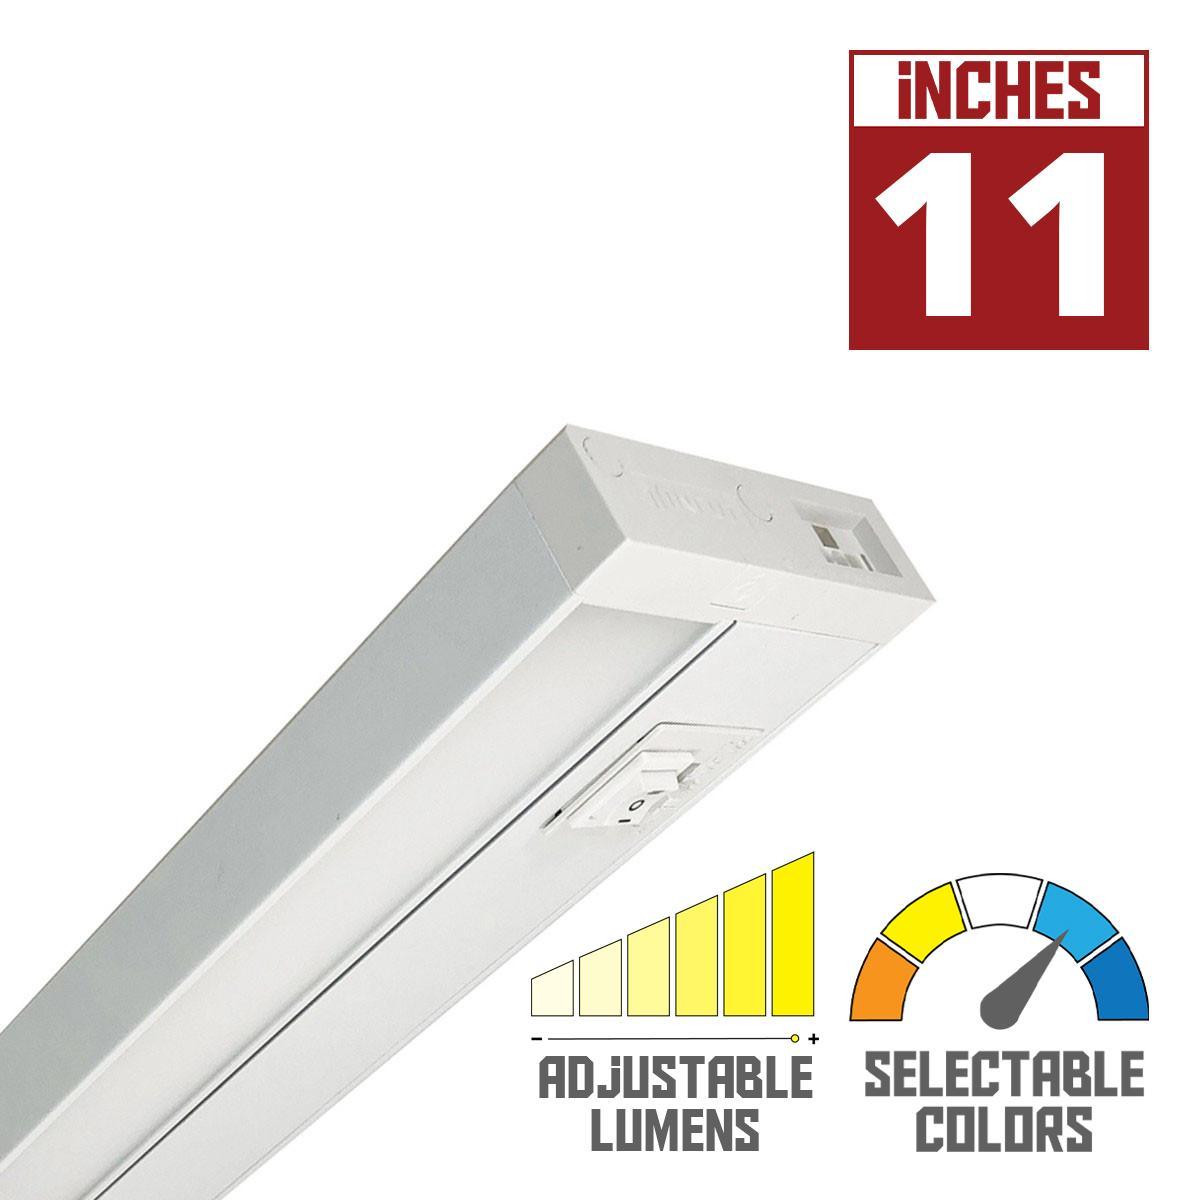 LEDUR TW 11 Inch EdgeLit Under Cabinet LED Light, Linkable, Adjustable Lumens 275/ 475 Lm, Field Selectable CCT 2700K to 5000K, 120V